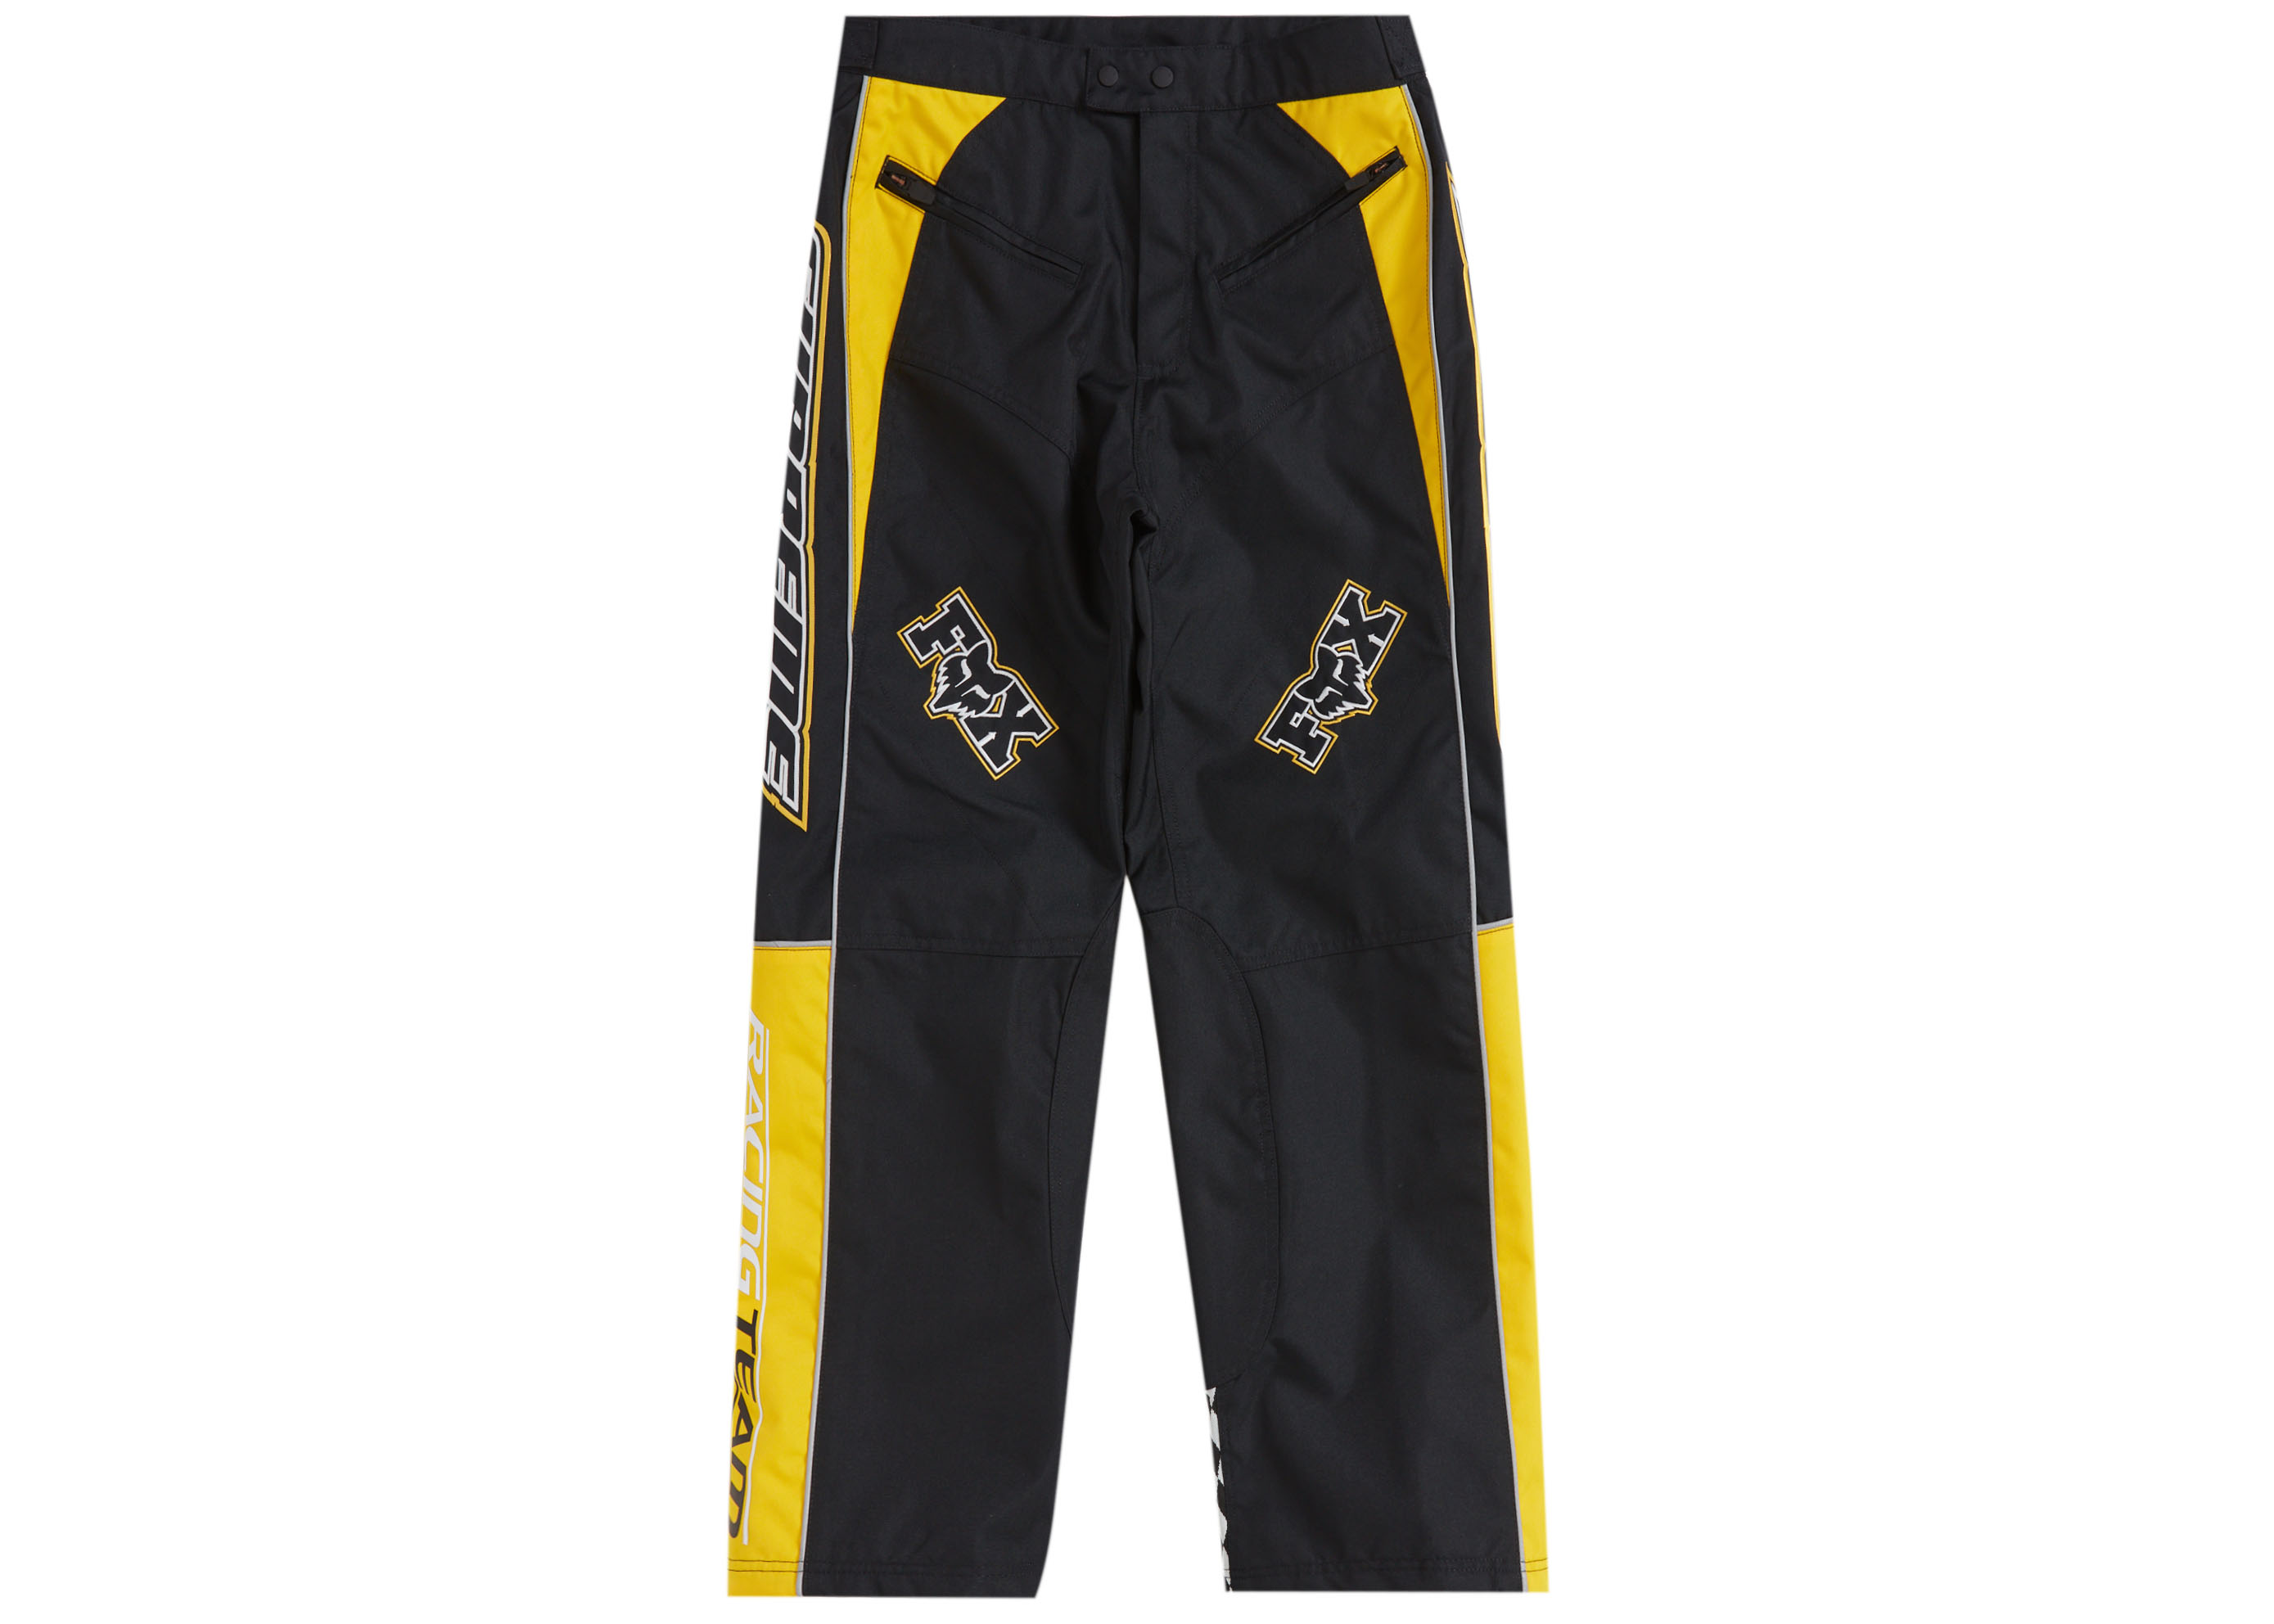 19,350円Supreme®/Fox® Racing Pant Black